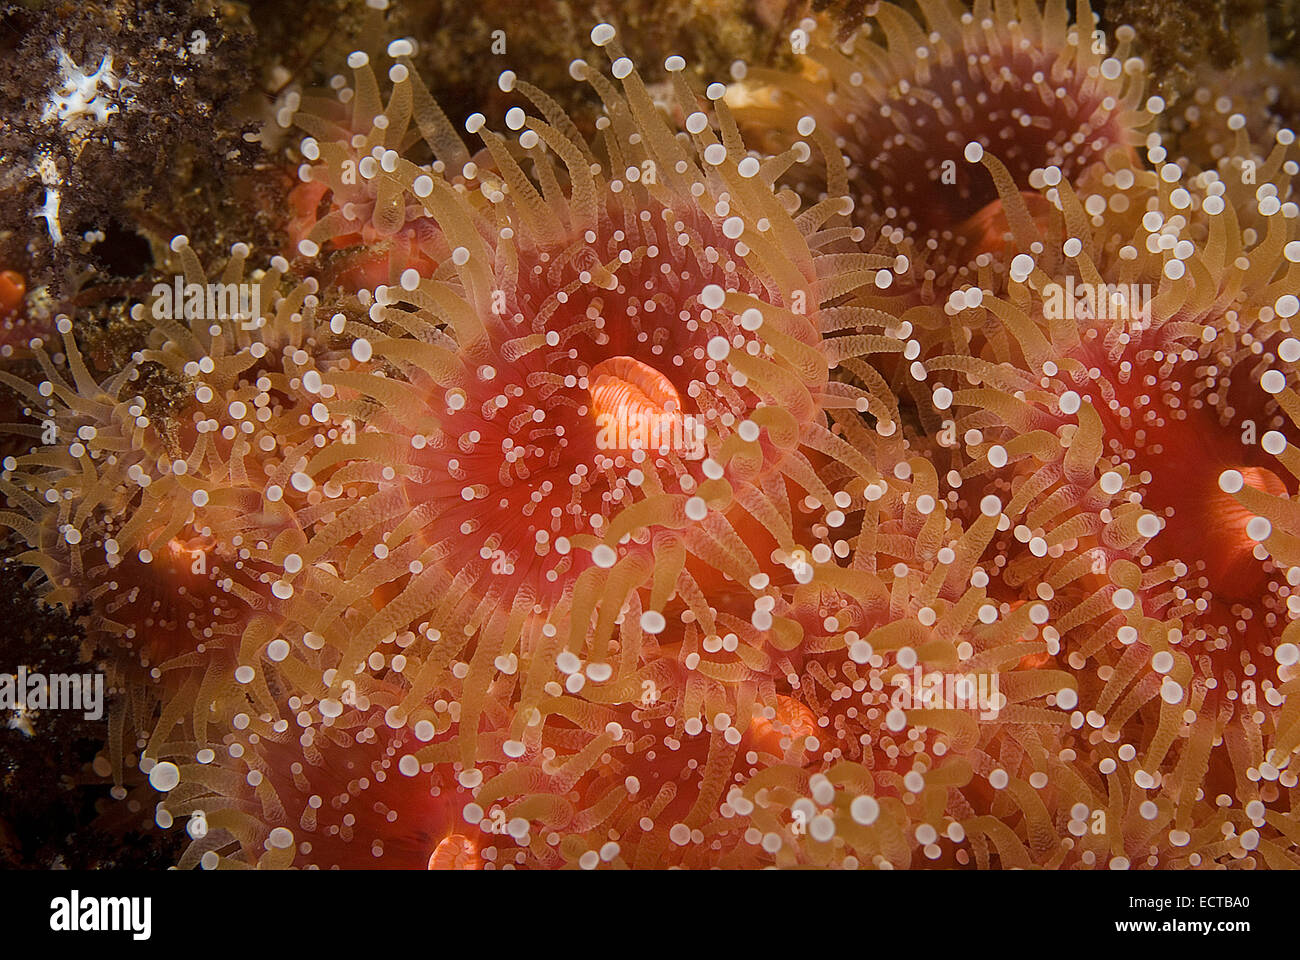 Strawberry Anemone Underwater Stock Photo